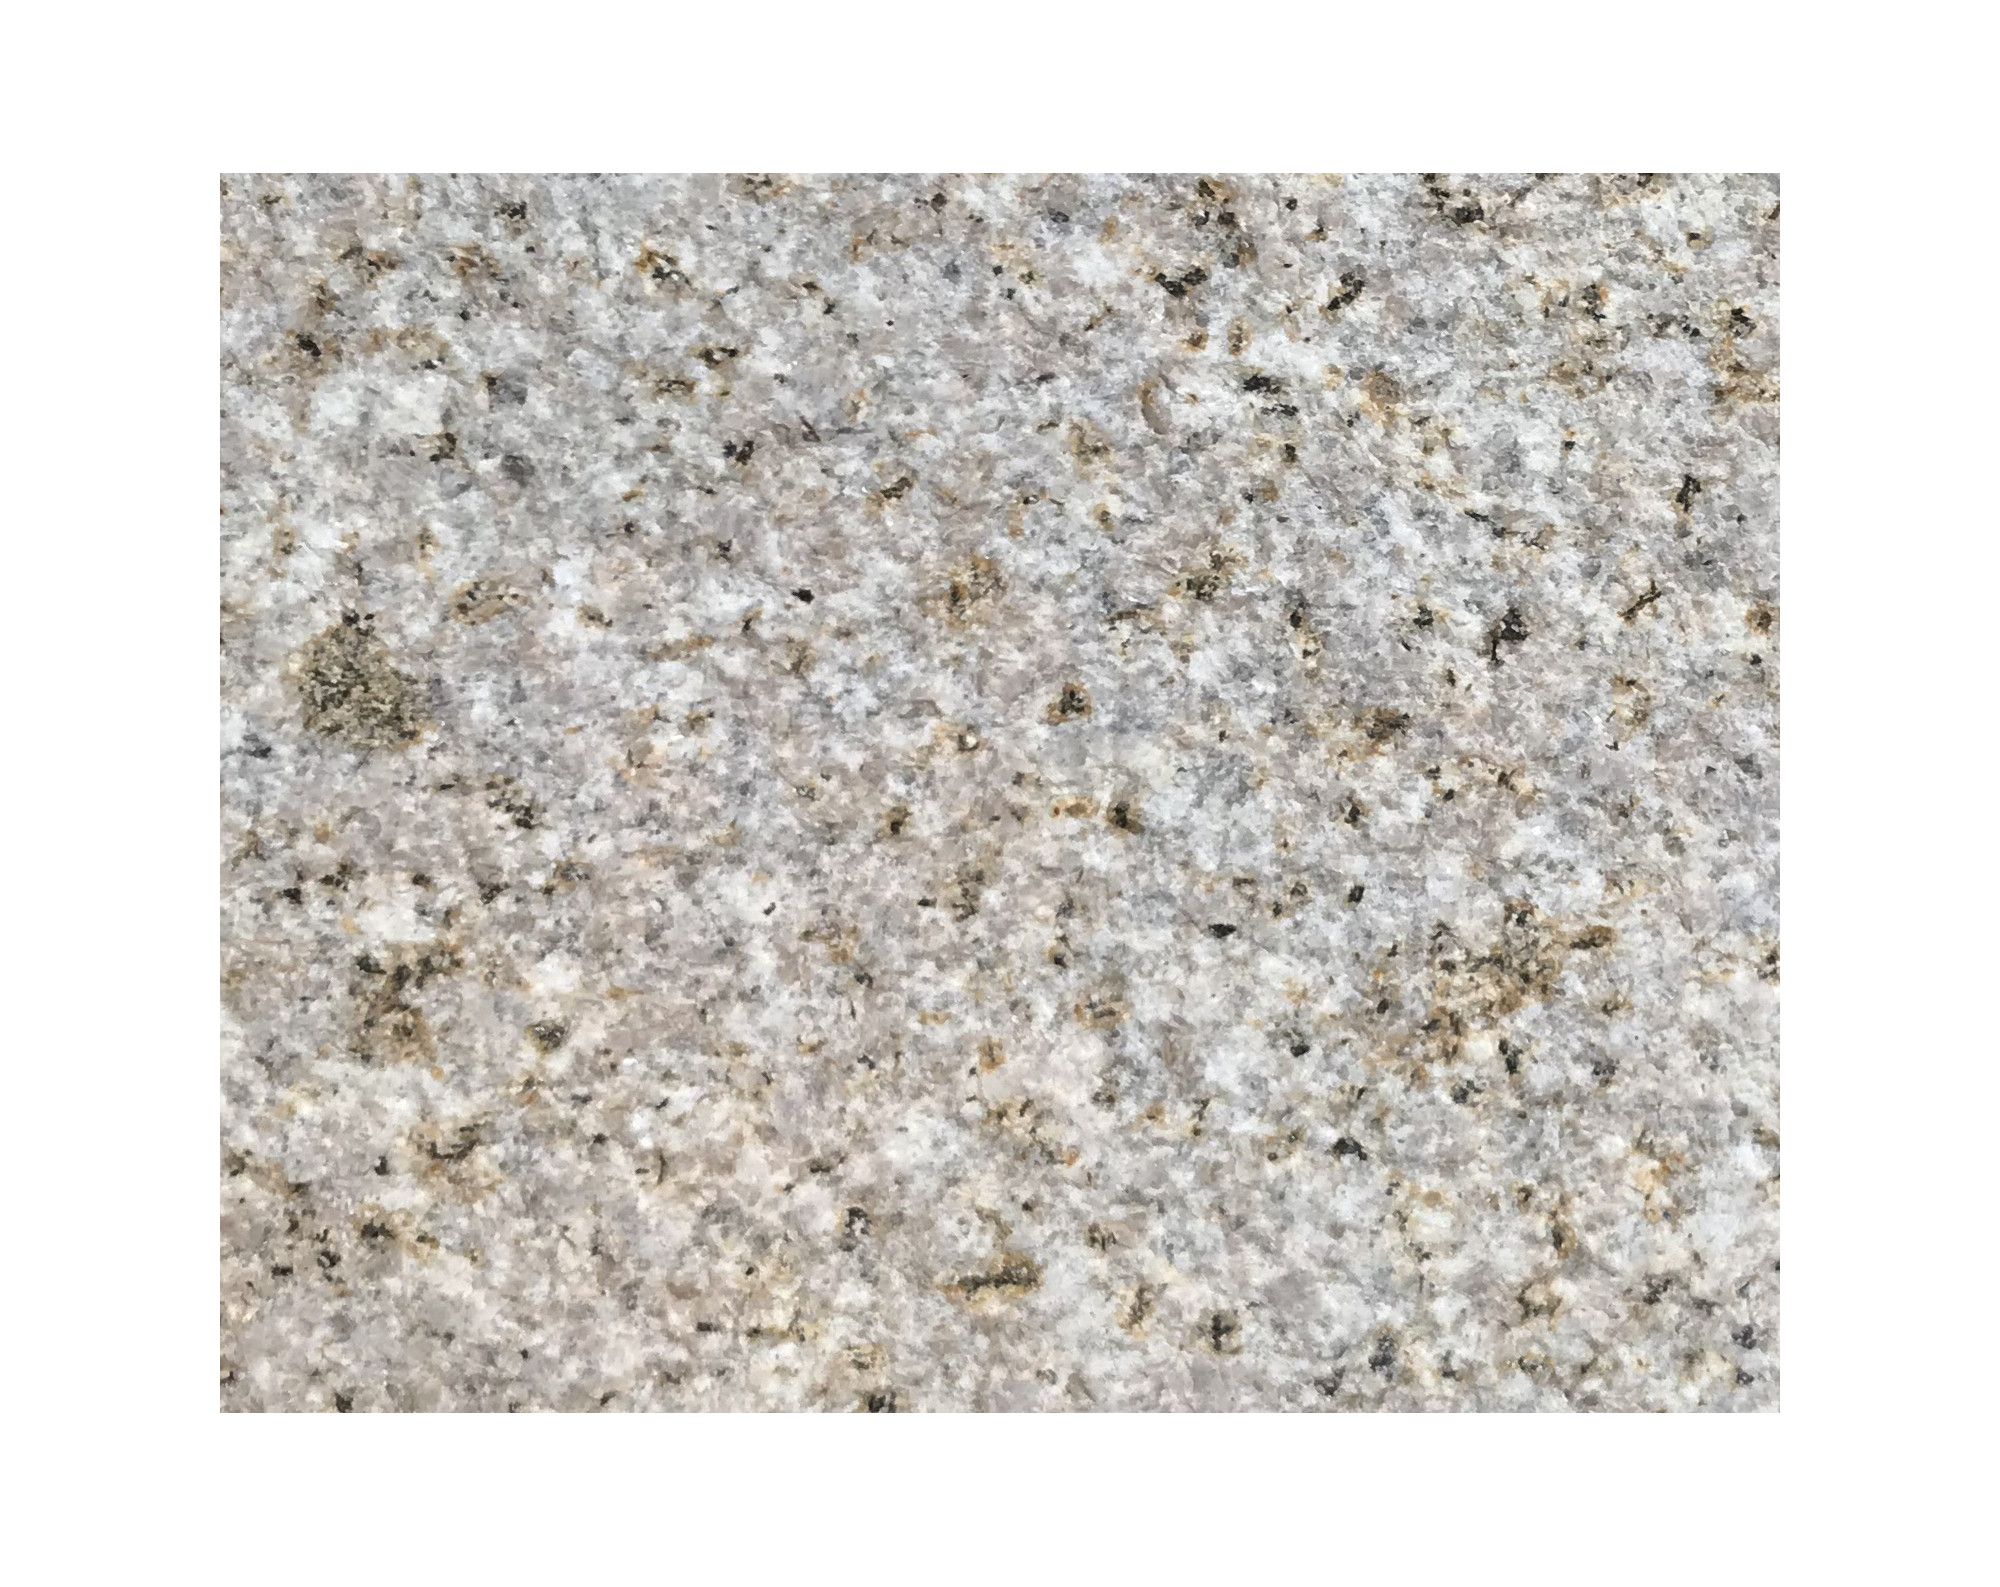 Harmo roc napoliset, natura-serie, ovaal d:5,00mx9,00m, zachtzand, graniet